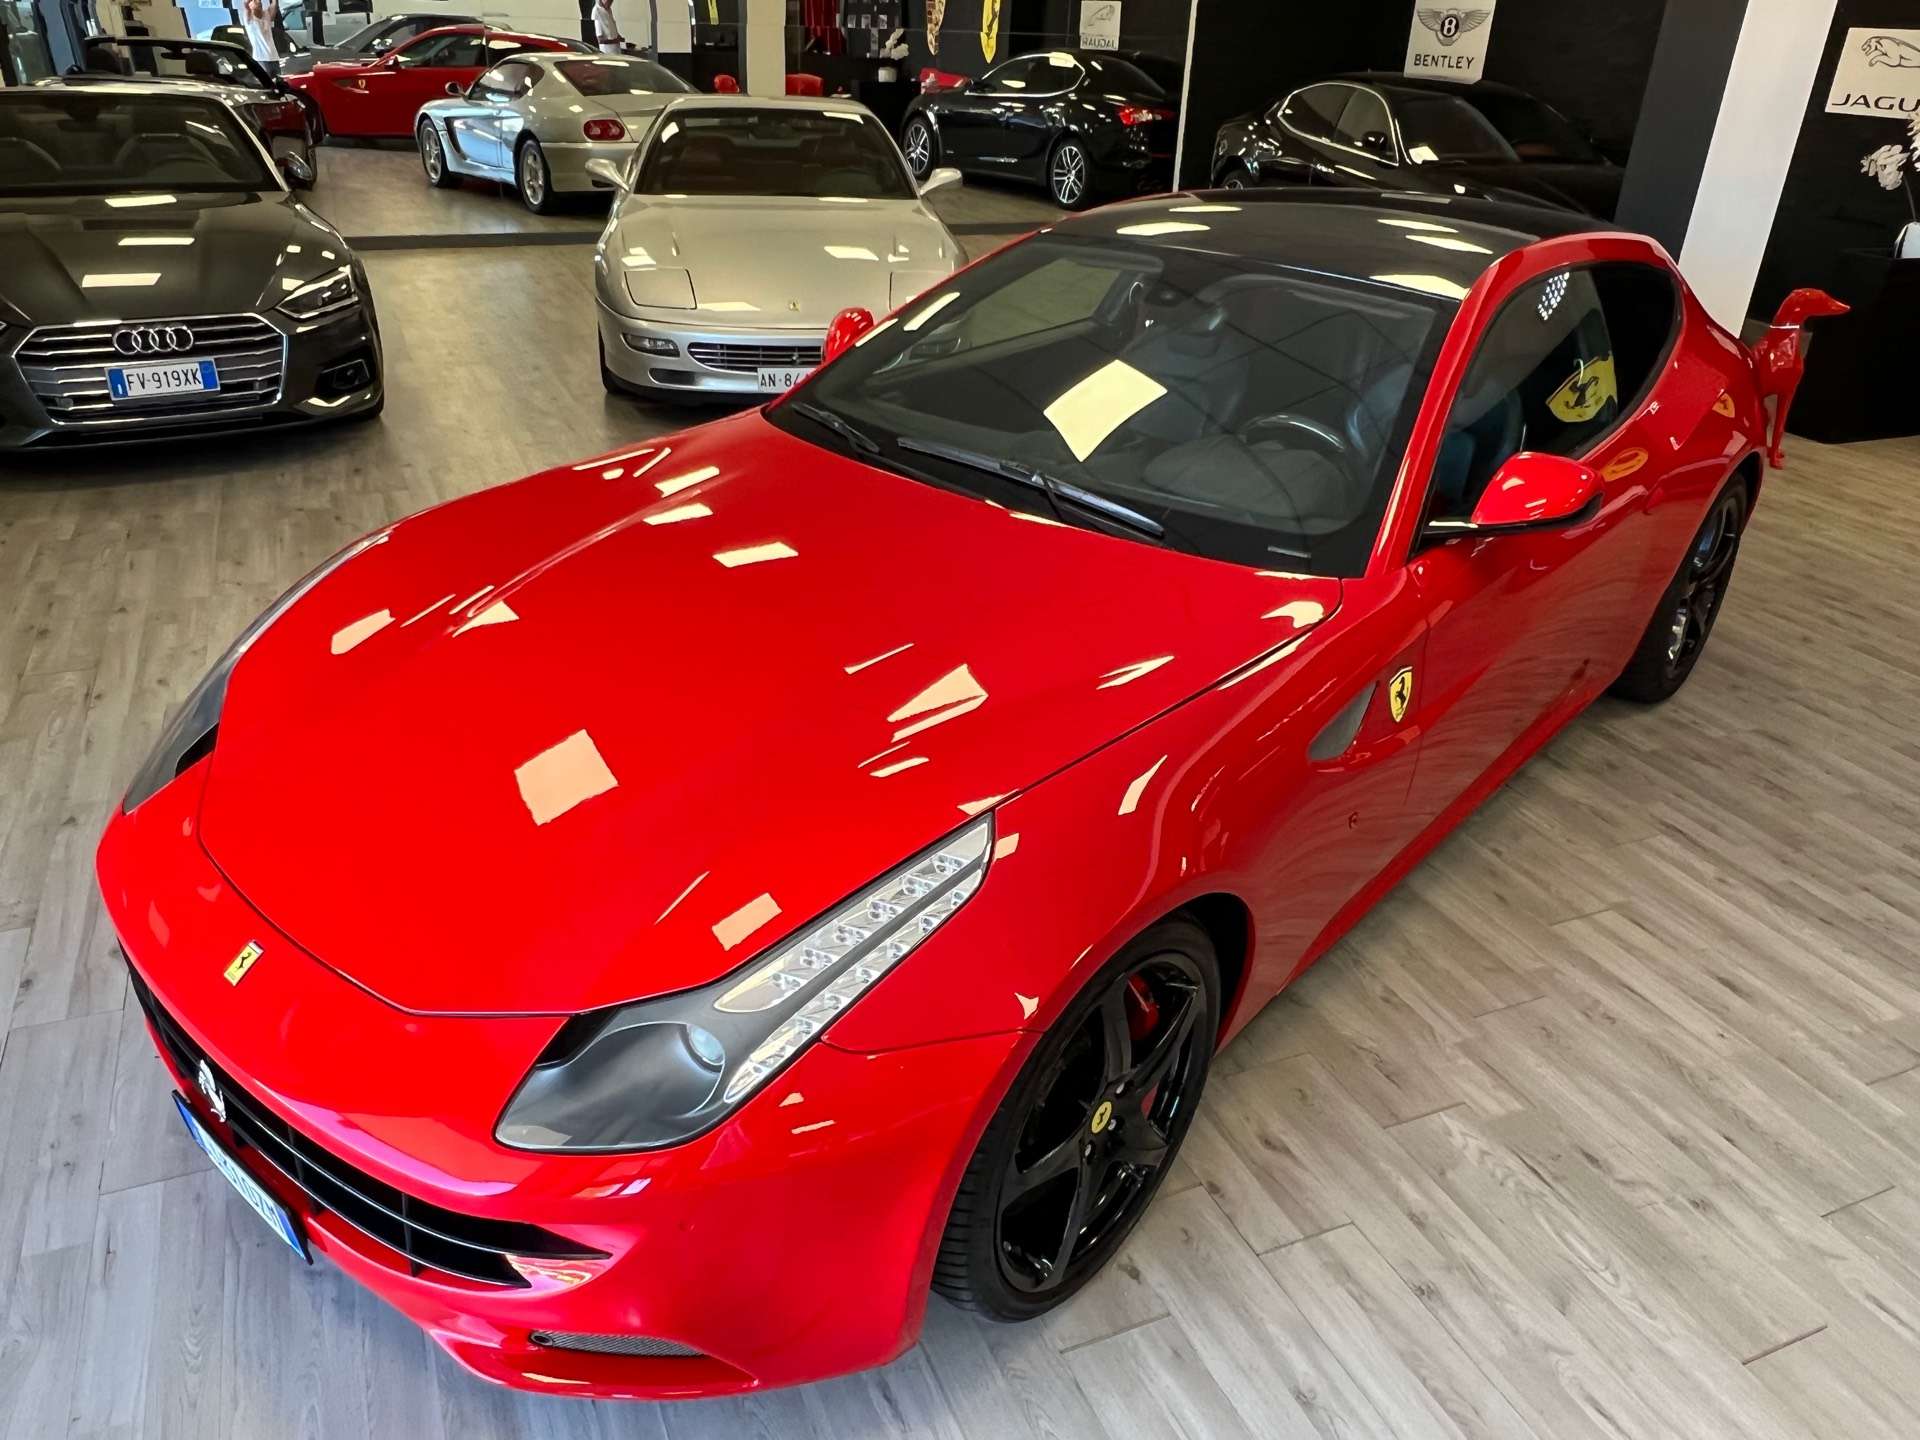 Ferrari FF Coupe in Red used in Sirmione - Brescia for € 1,349,000.-